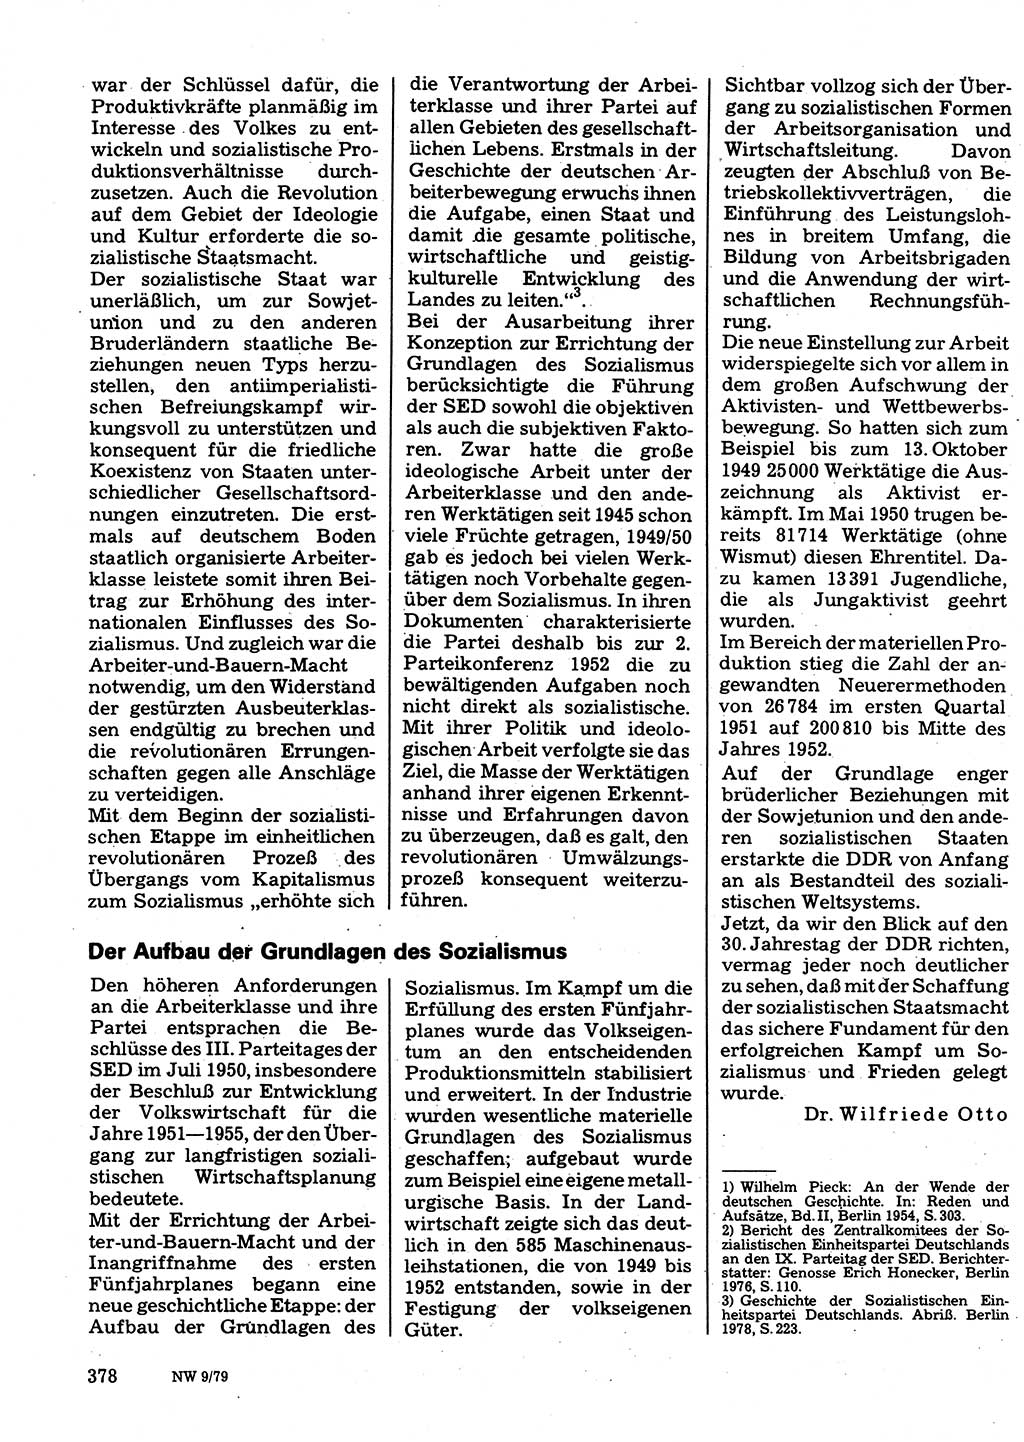 Neuer Weg (NW), Organ des Zentralkomitees (ZK) der SED (Sozialistische Einheitspartei Deutschlands) für Fragen des Parteilebens, 34. Jahrgang [Deutsche Demokratische Republik (DDR)] 1979, Seite 378 (NW ZK SED DDR 1979, S. 378)